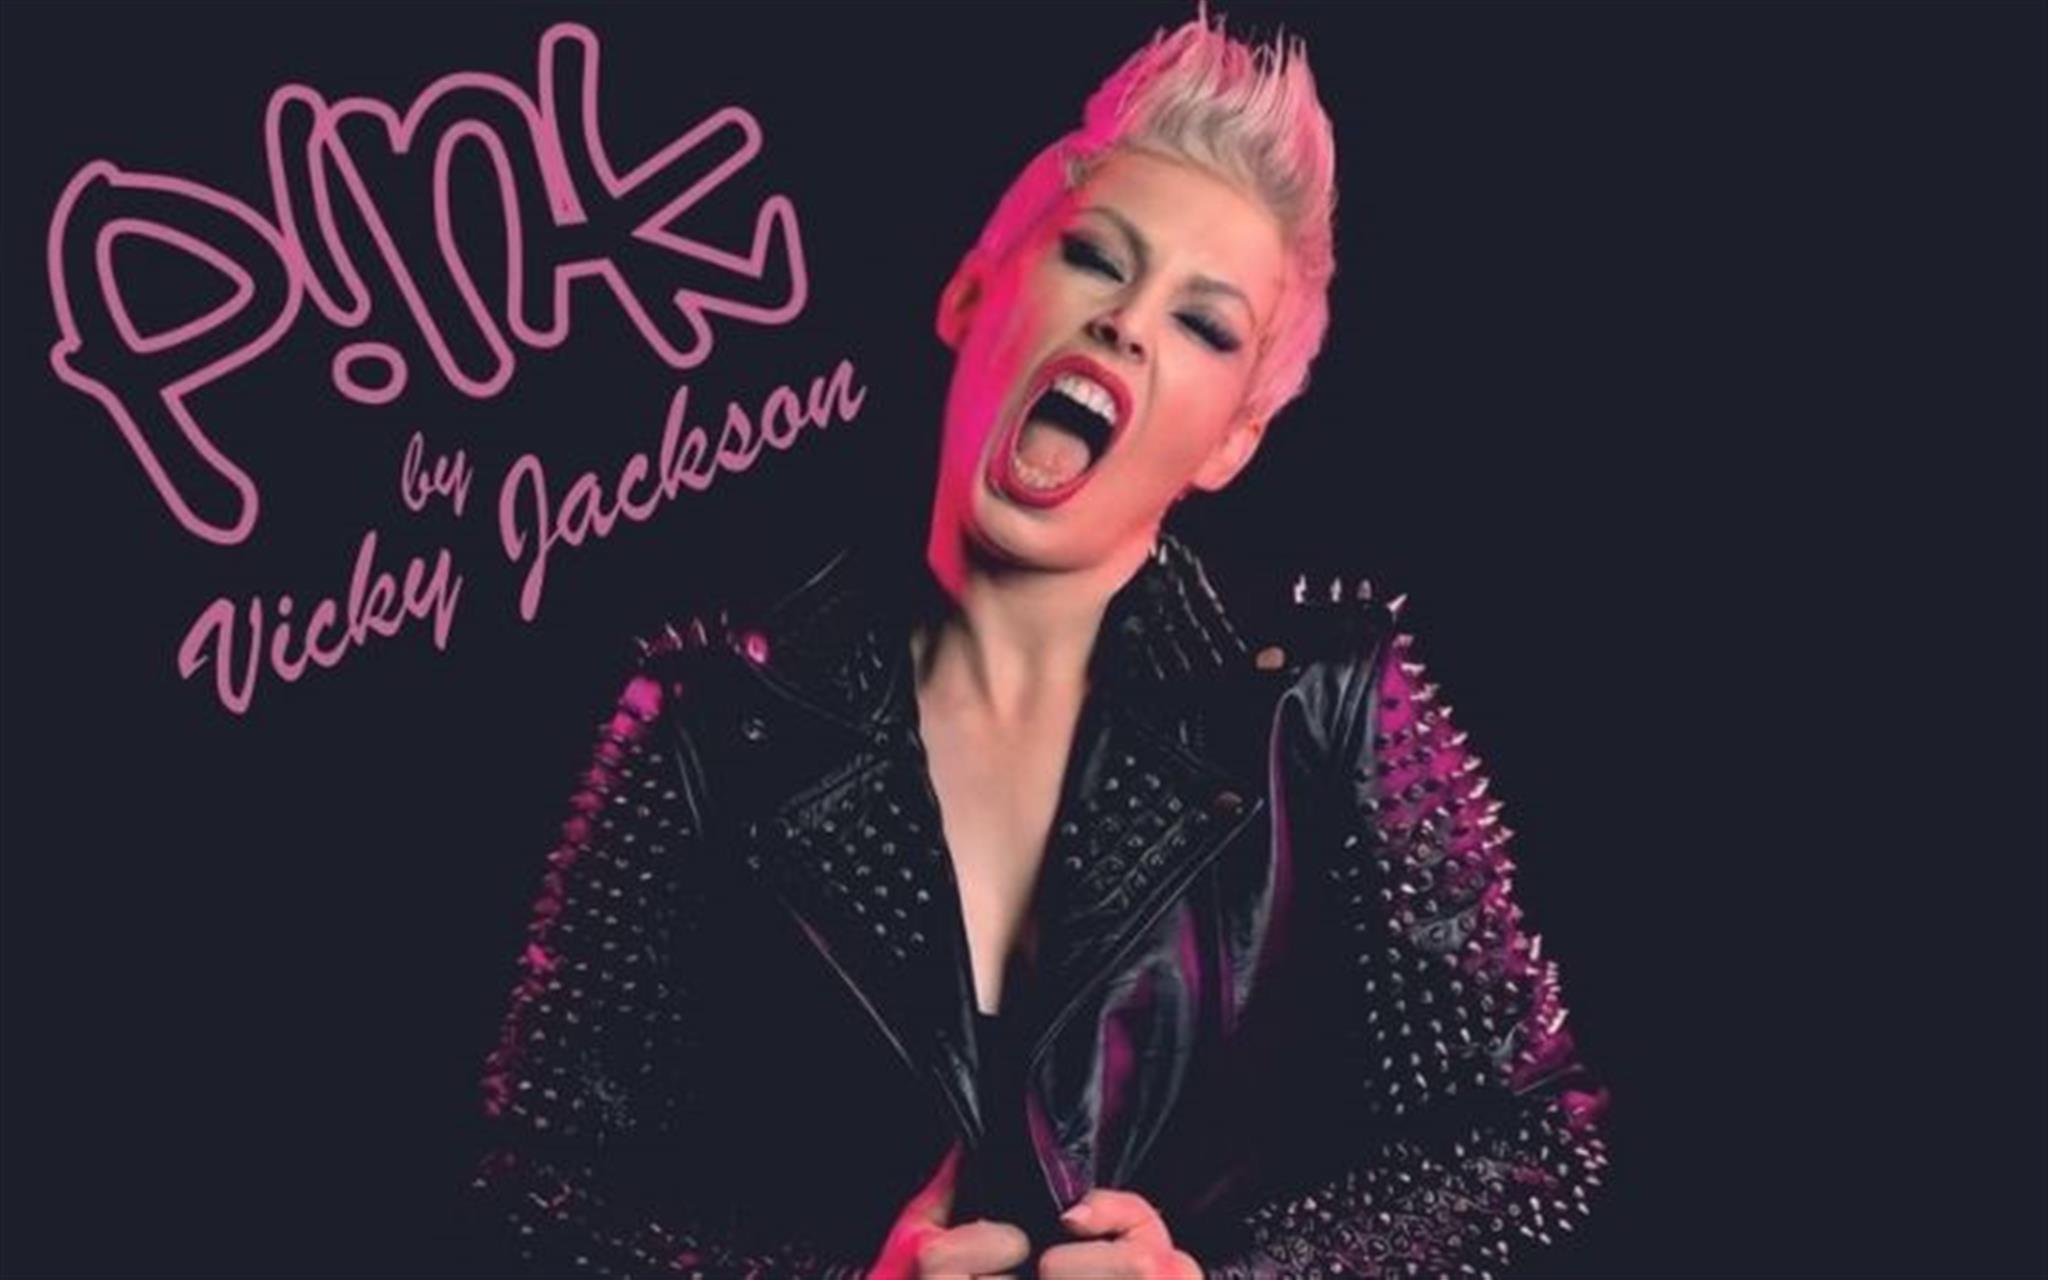 Pink by Vicky Jackson